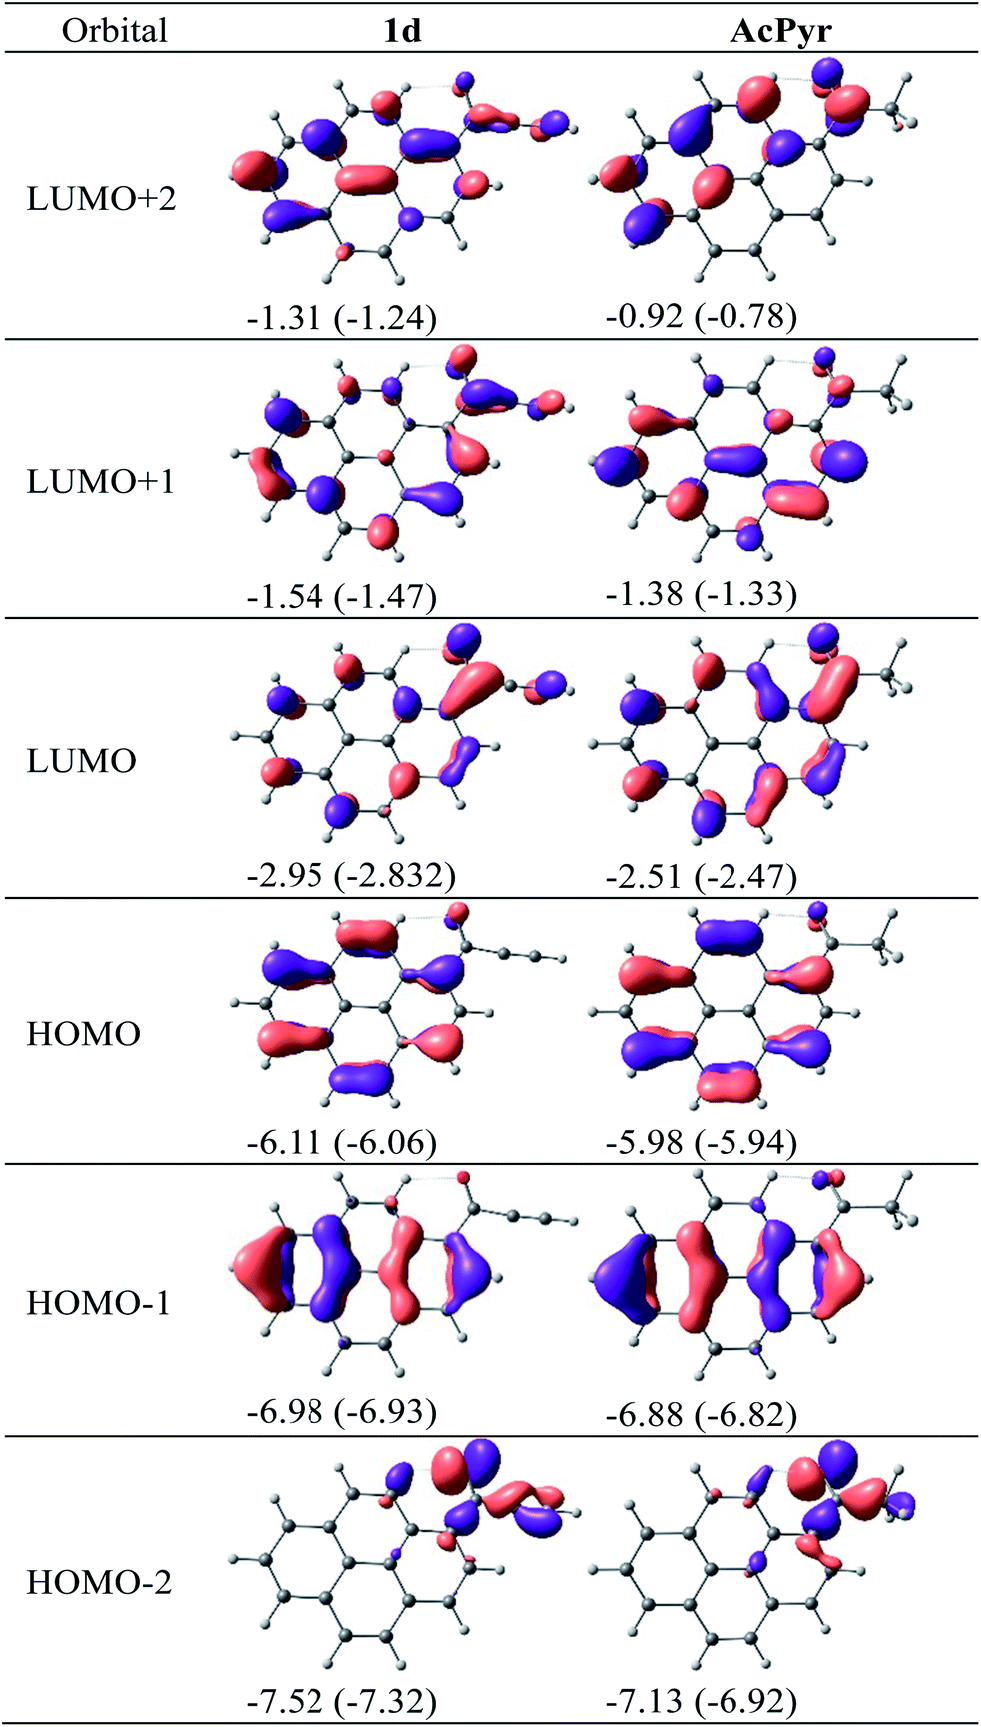 DFT-calculated molecular orbitals for 1d and AcPyr. 